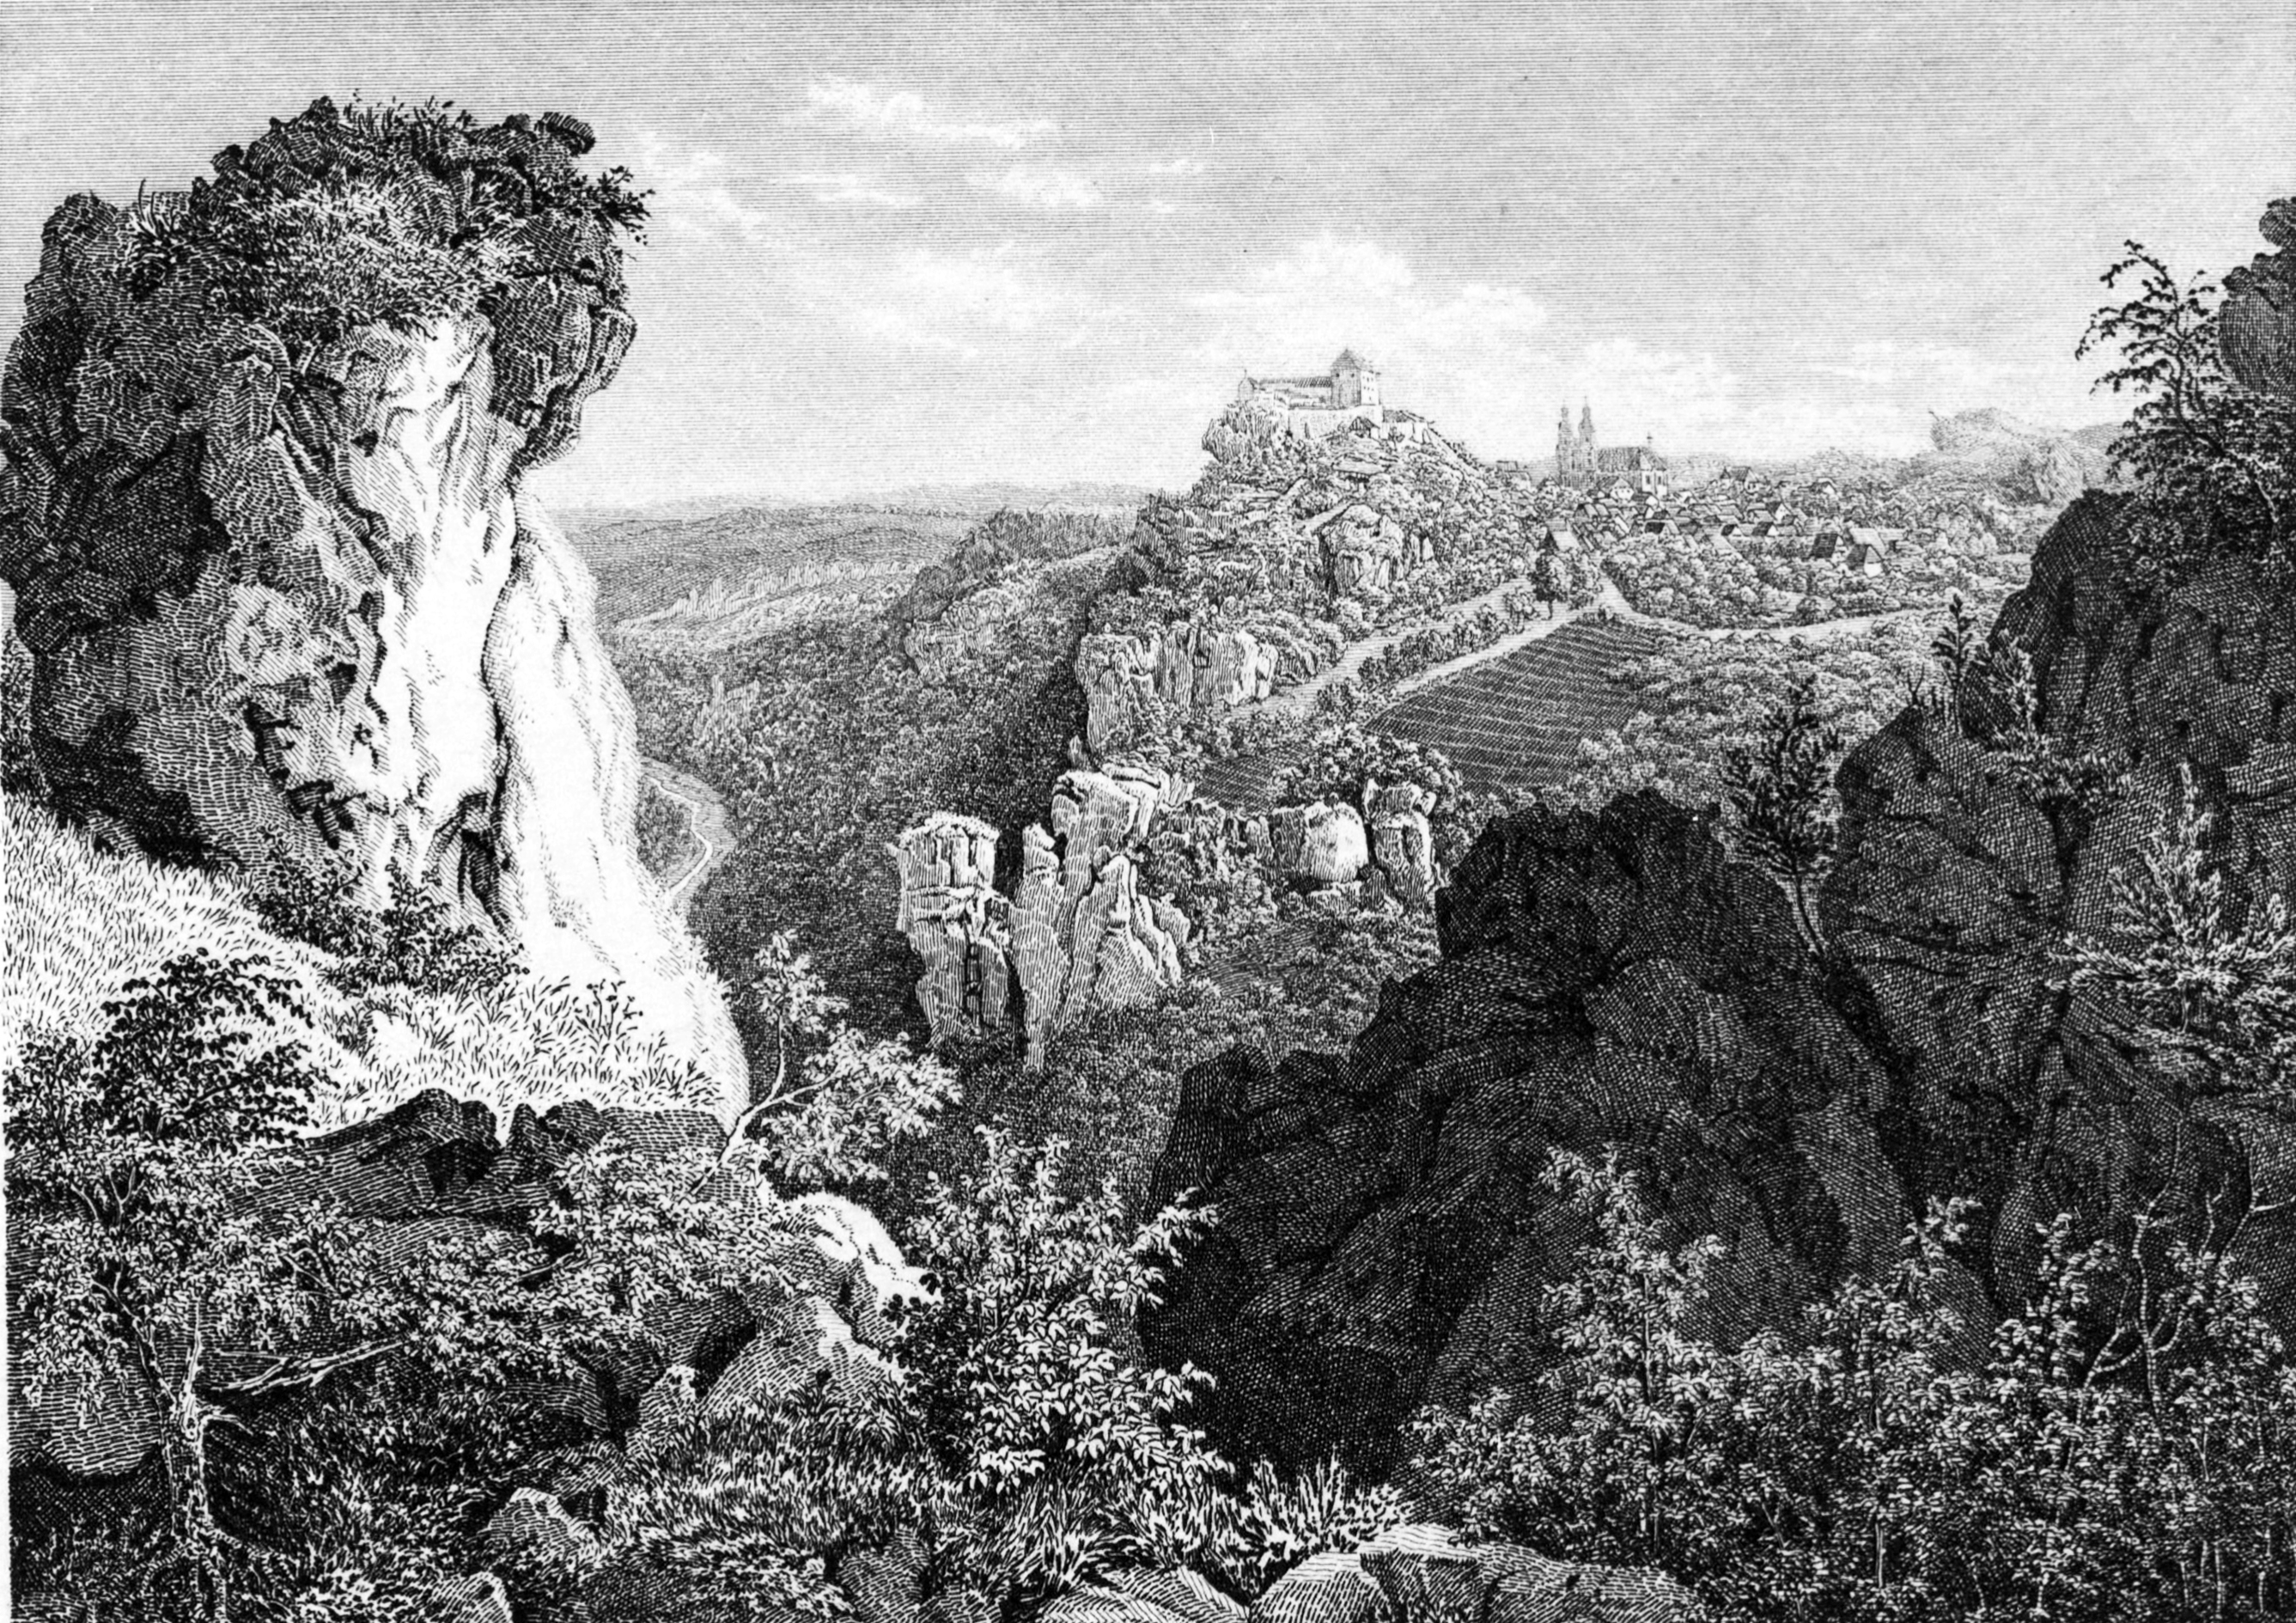 Stahlstich von C. Wießner (1834), veröffentlicht im Album der Fränkischen Schweiz (1840). Links erkennt man das Tal der Wiesent, in der Mitte die Burg Gößweinstein und rechts daran anschließend die Basilika.